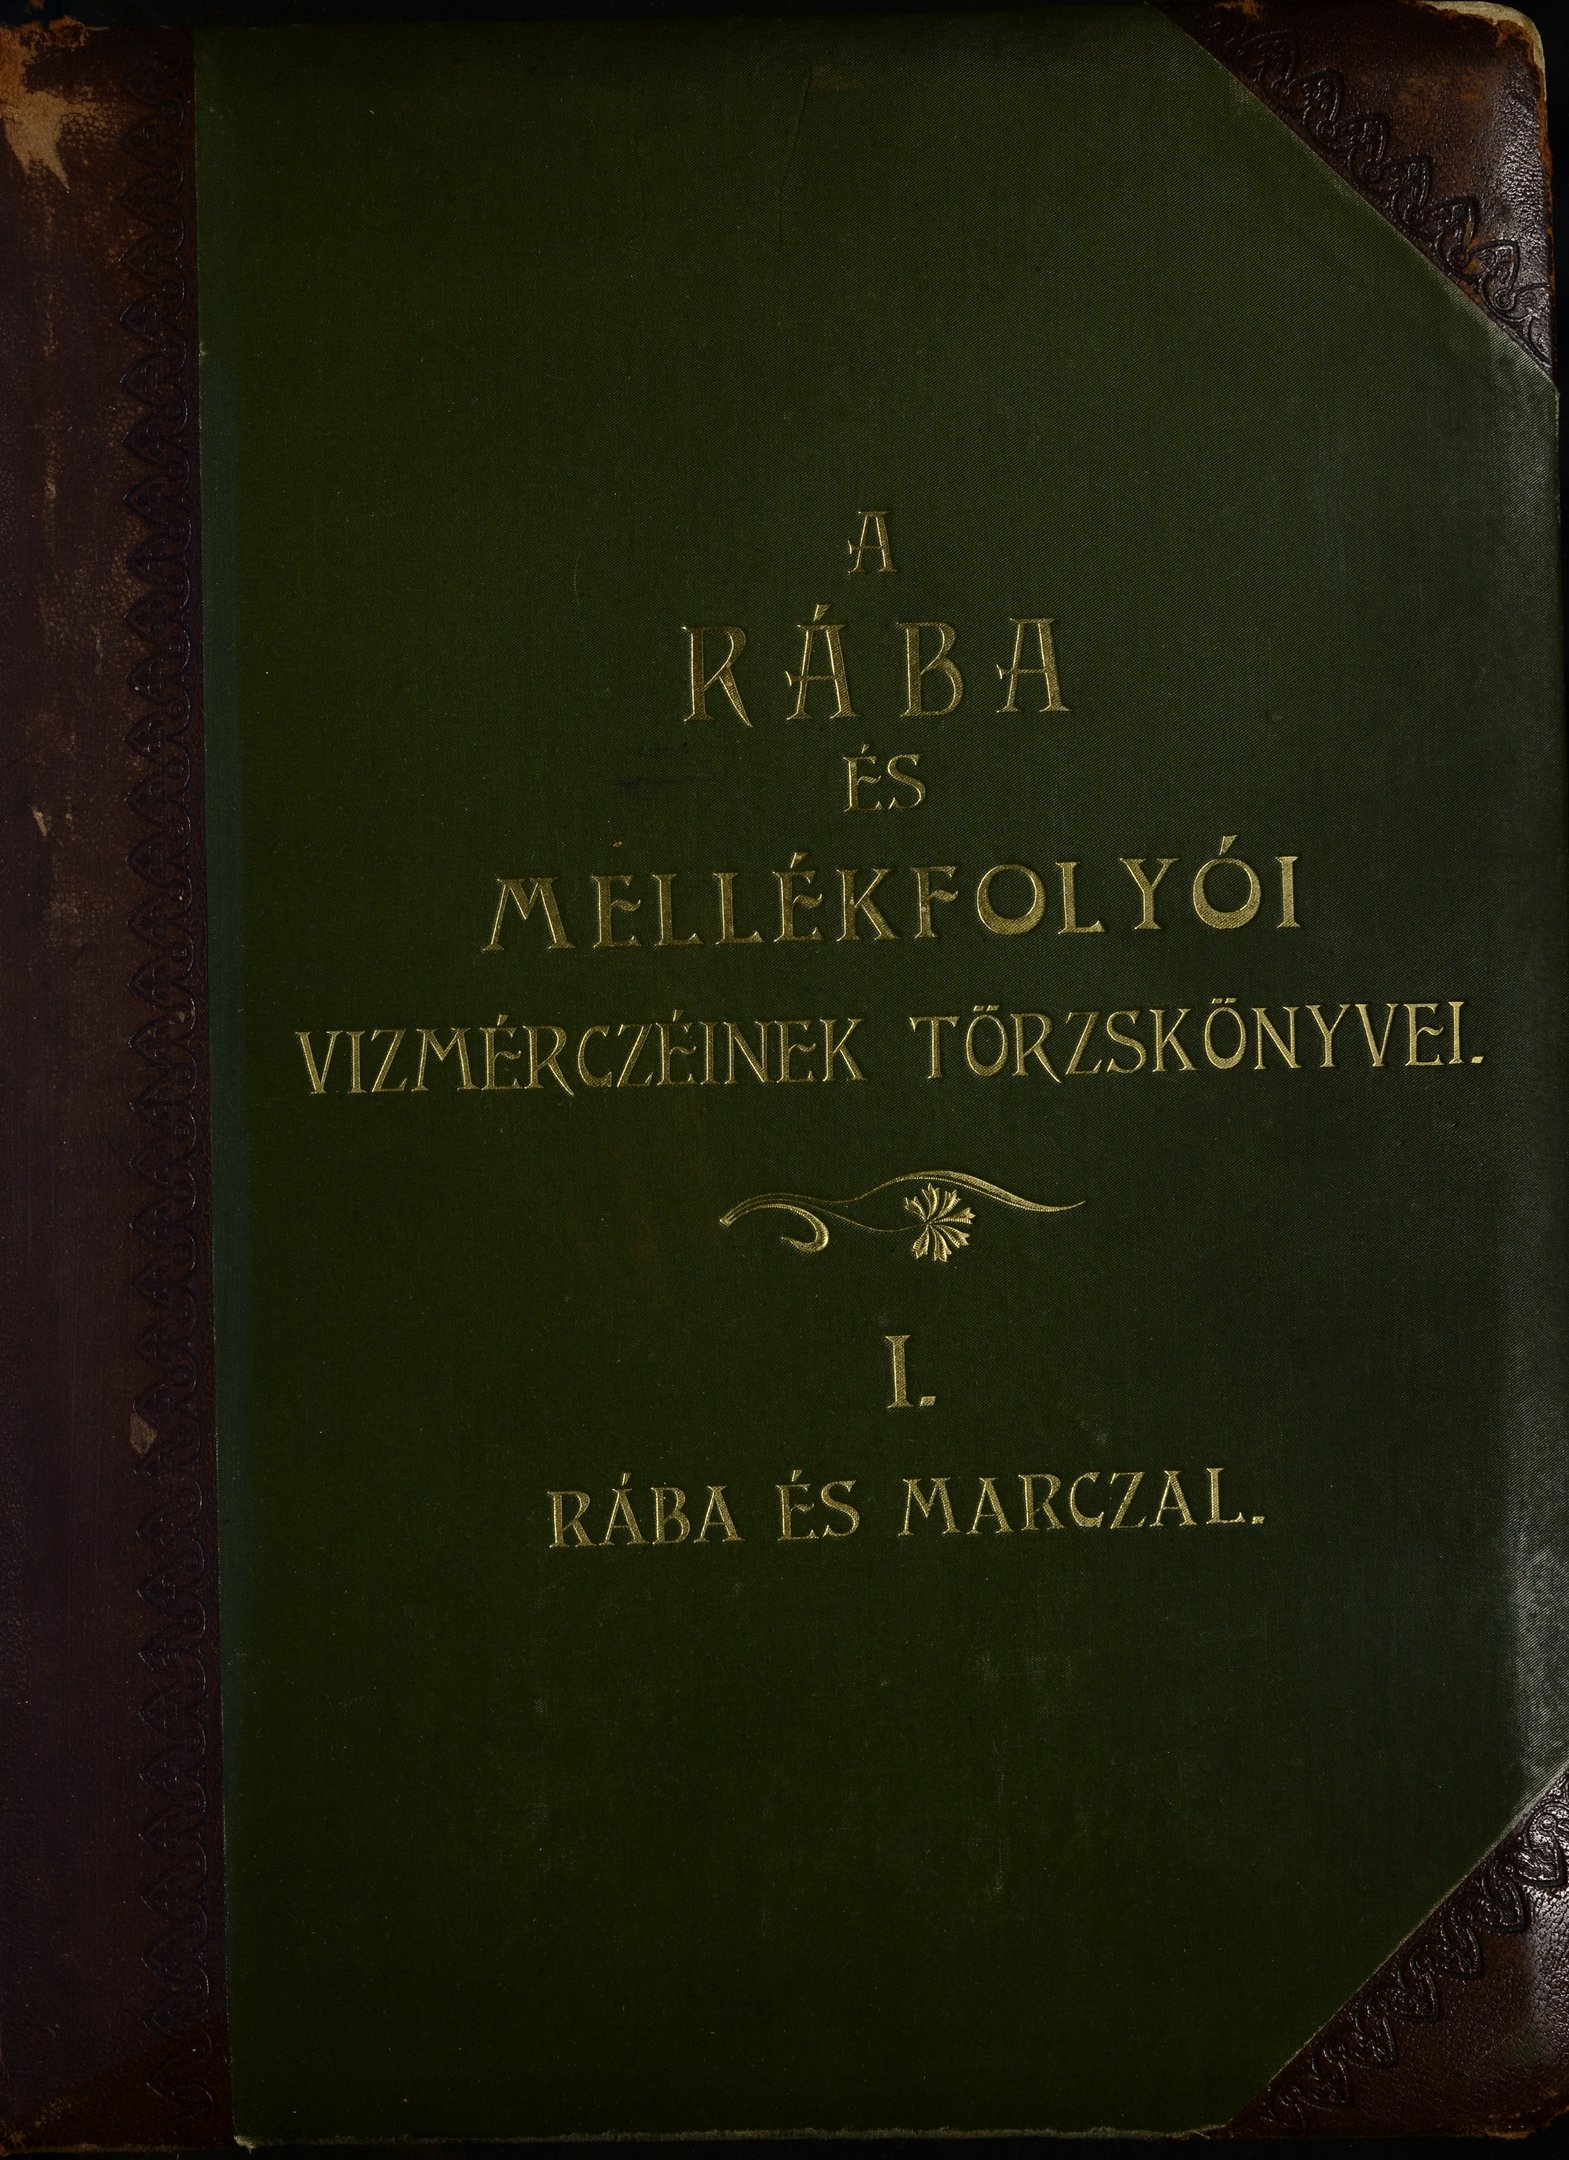 A Rába és mellékfolyói vízmércéinek törzskönyvei - Rába és Marczal (Magyar Környezetvédelmi és Vízügyi Múzeum - Duna Múzeum CC BY-NC-SA)